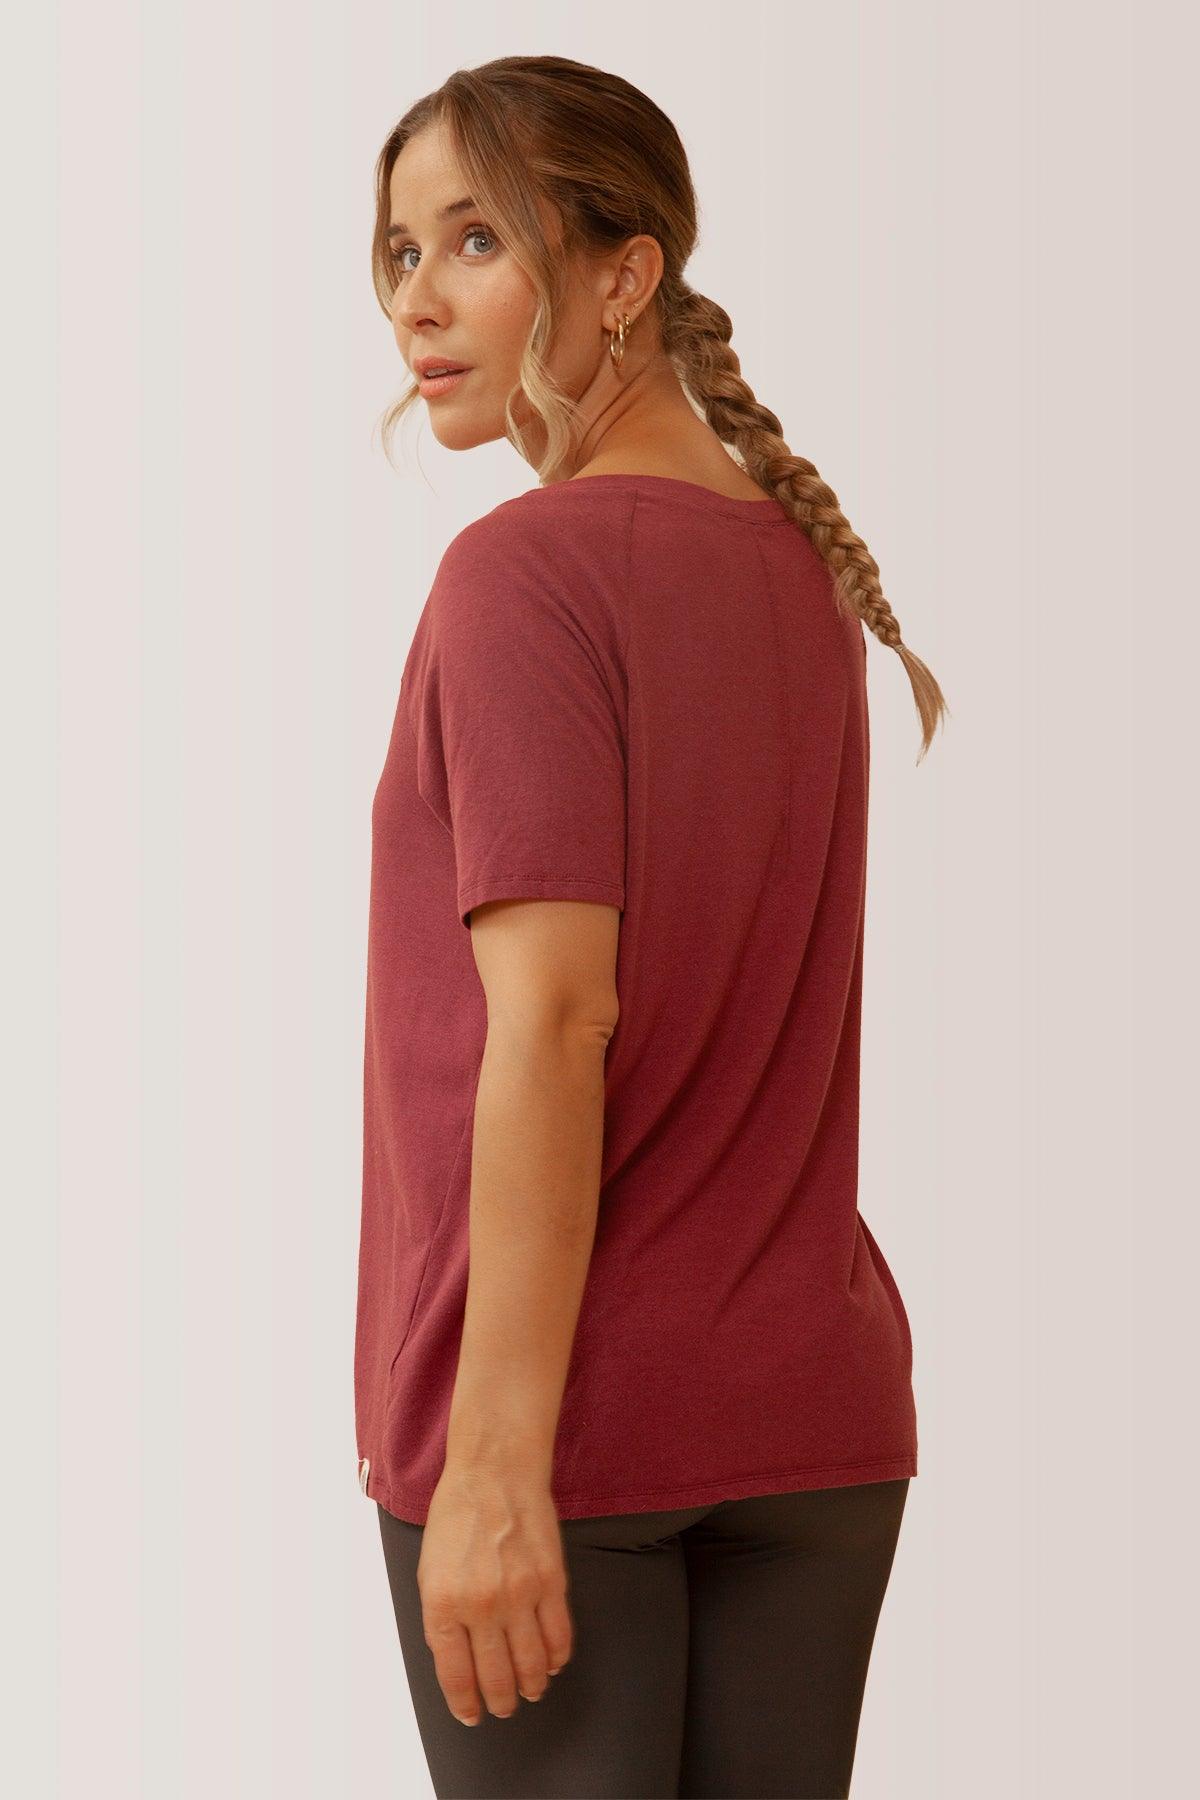 Femme vêtue du t-shirt blissful flow par Rose Boreal. / Women wearing the blissful flow t-shirt by Rose Boreal. - Cassis